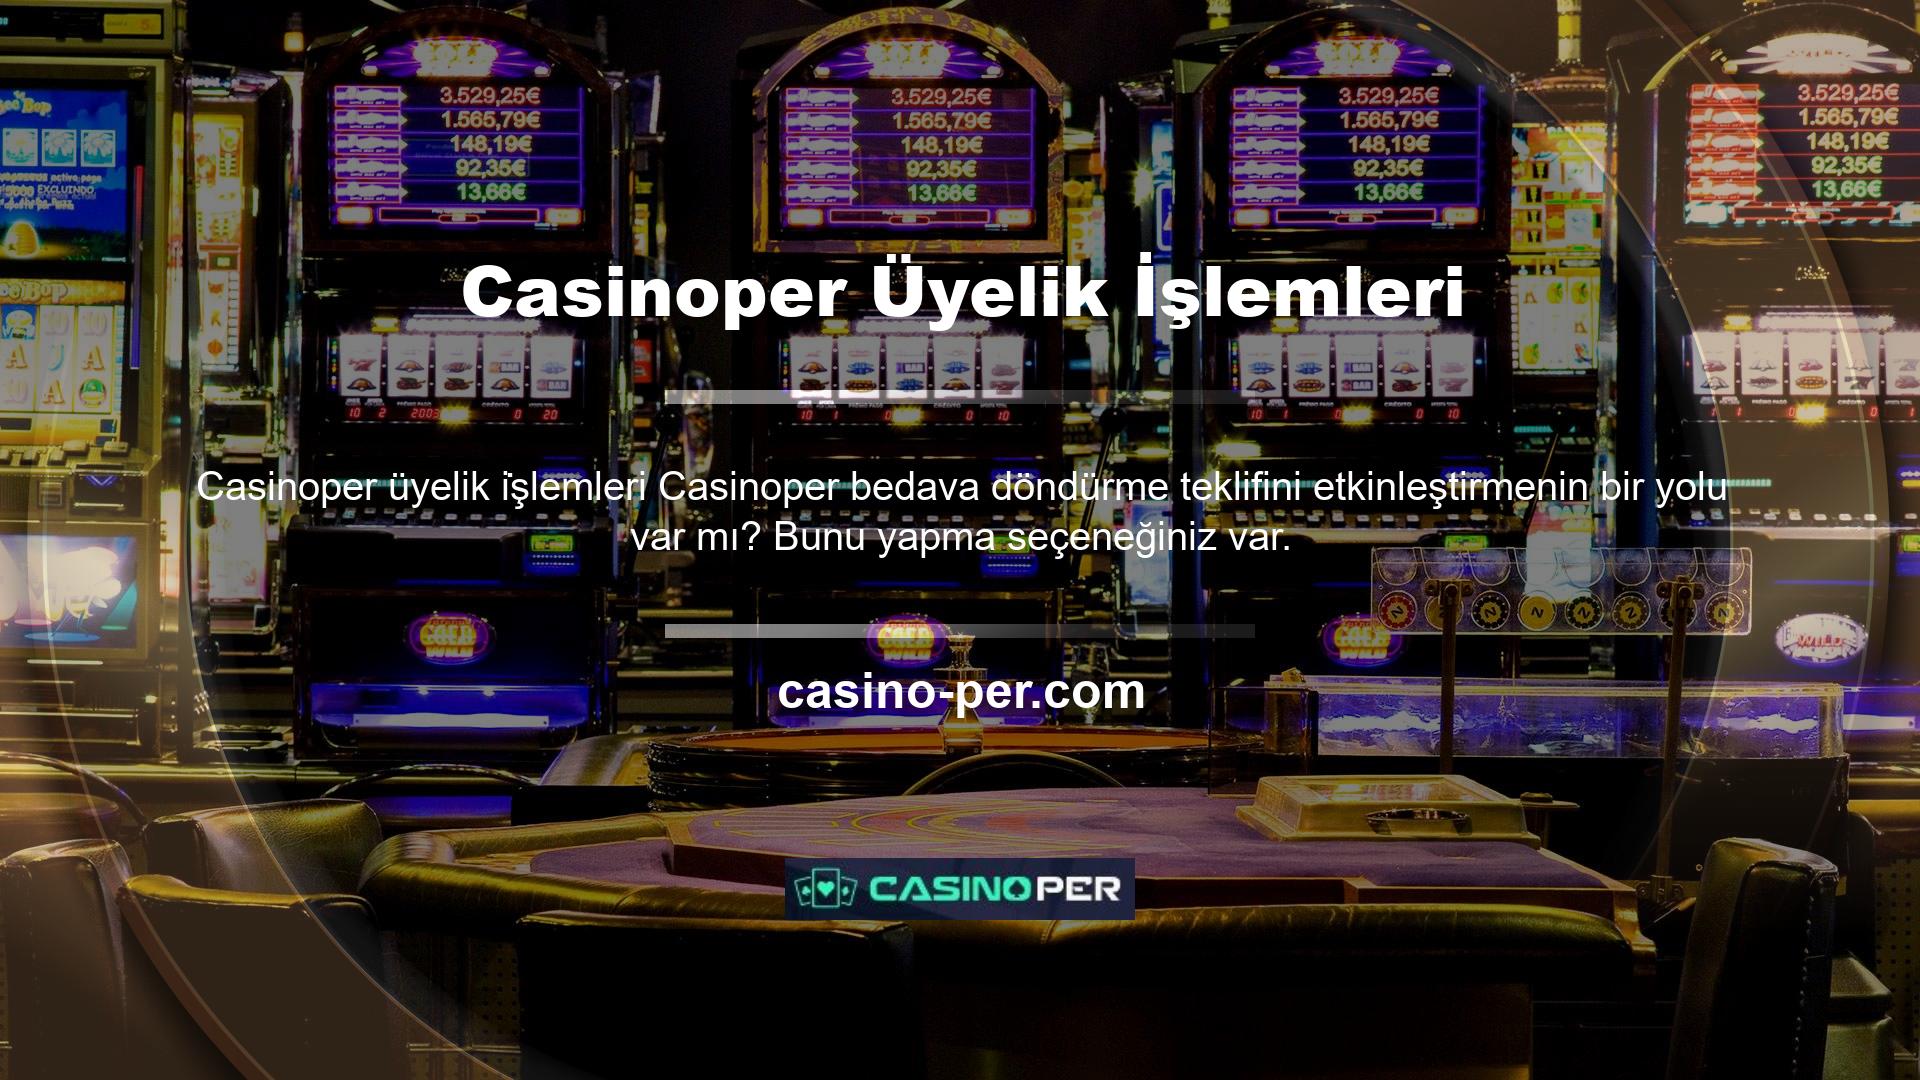 ' Casinoper web sitesinin Promosyon sayfası hakkında daha fazla bilgi için bu promosyona veya bonus